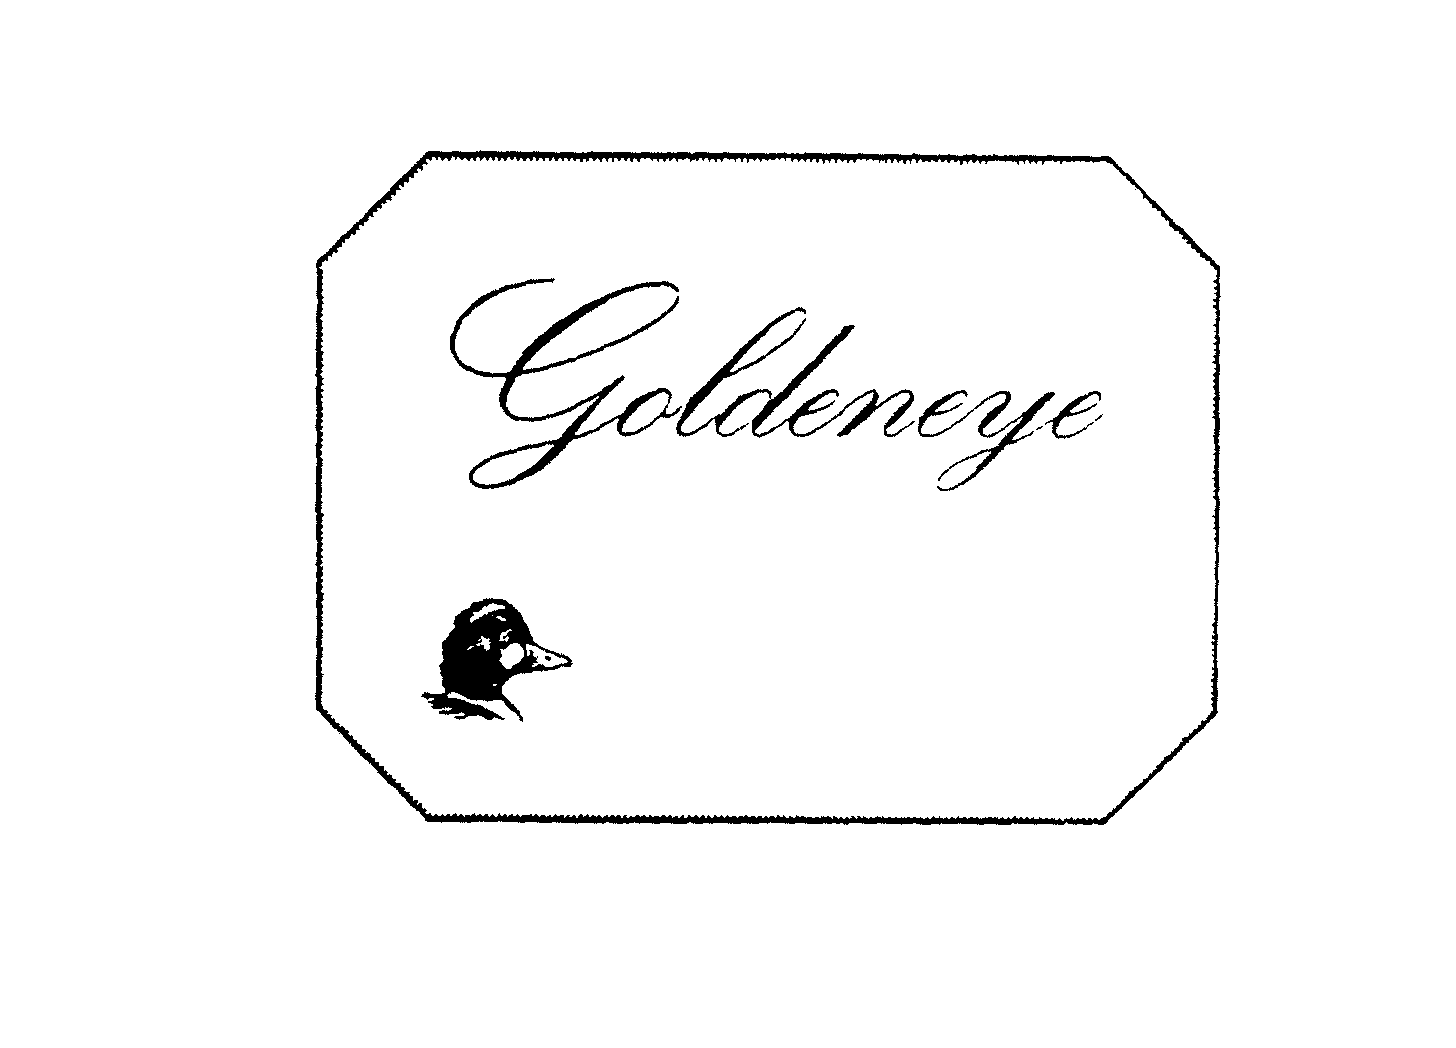  GOLDENEYE